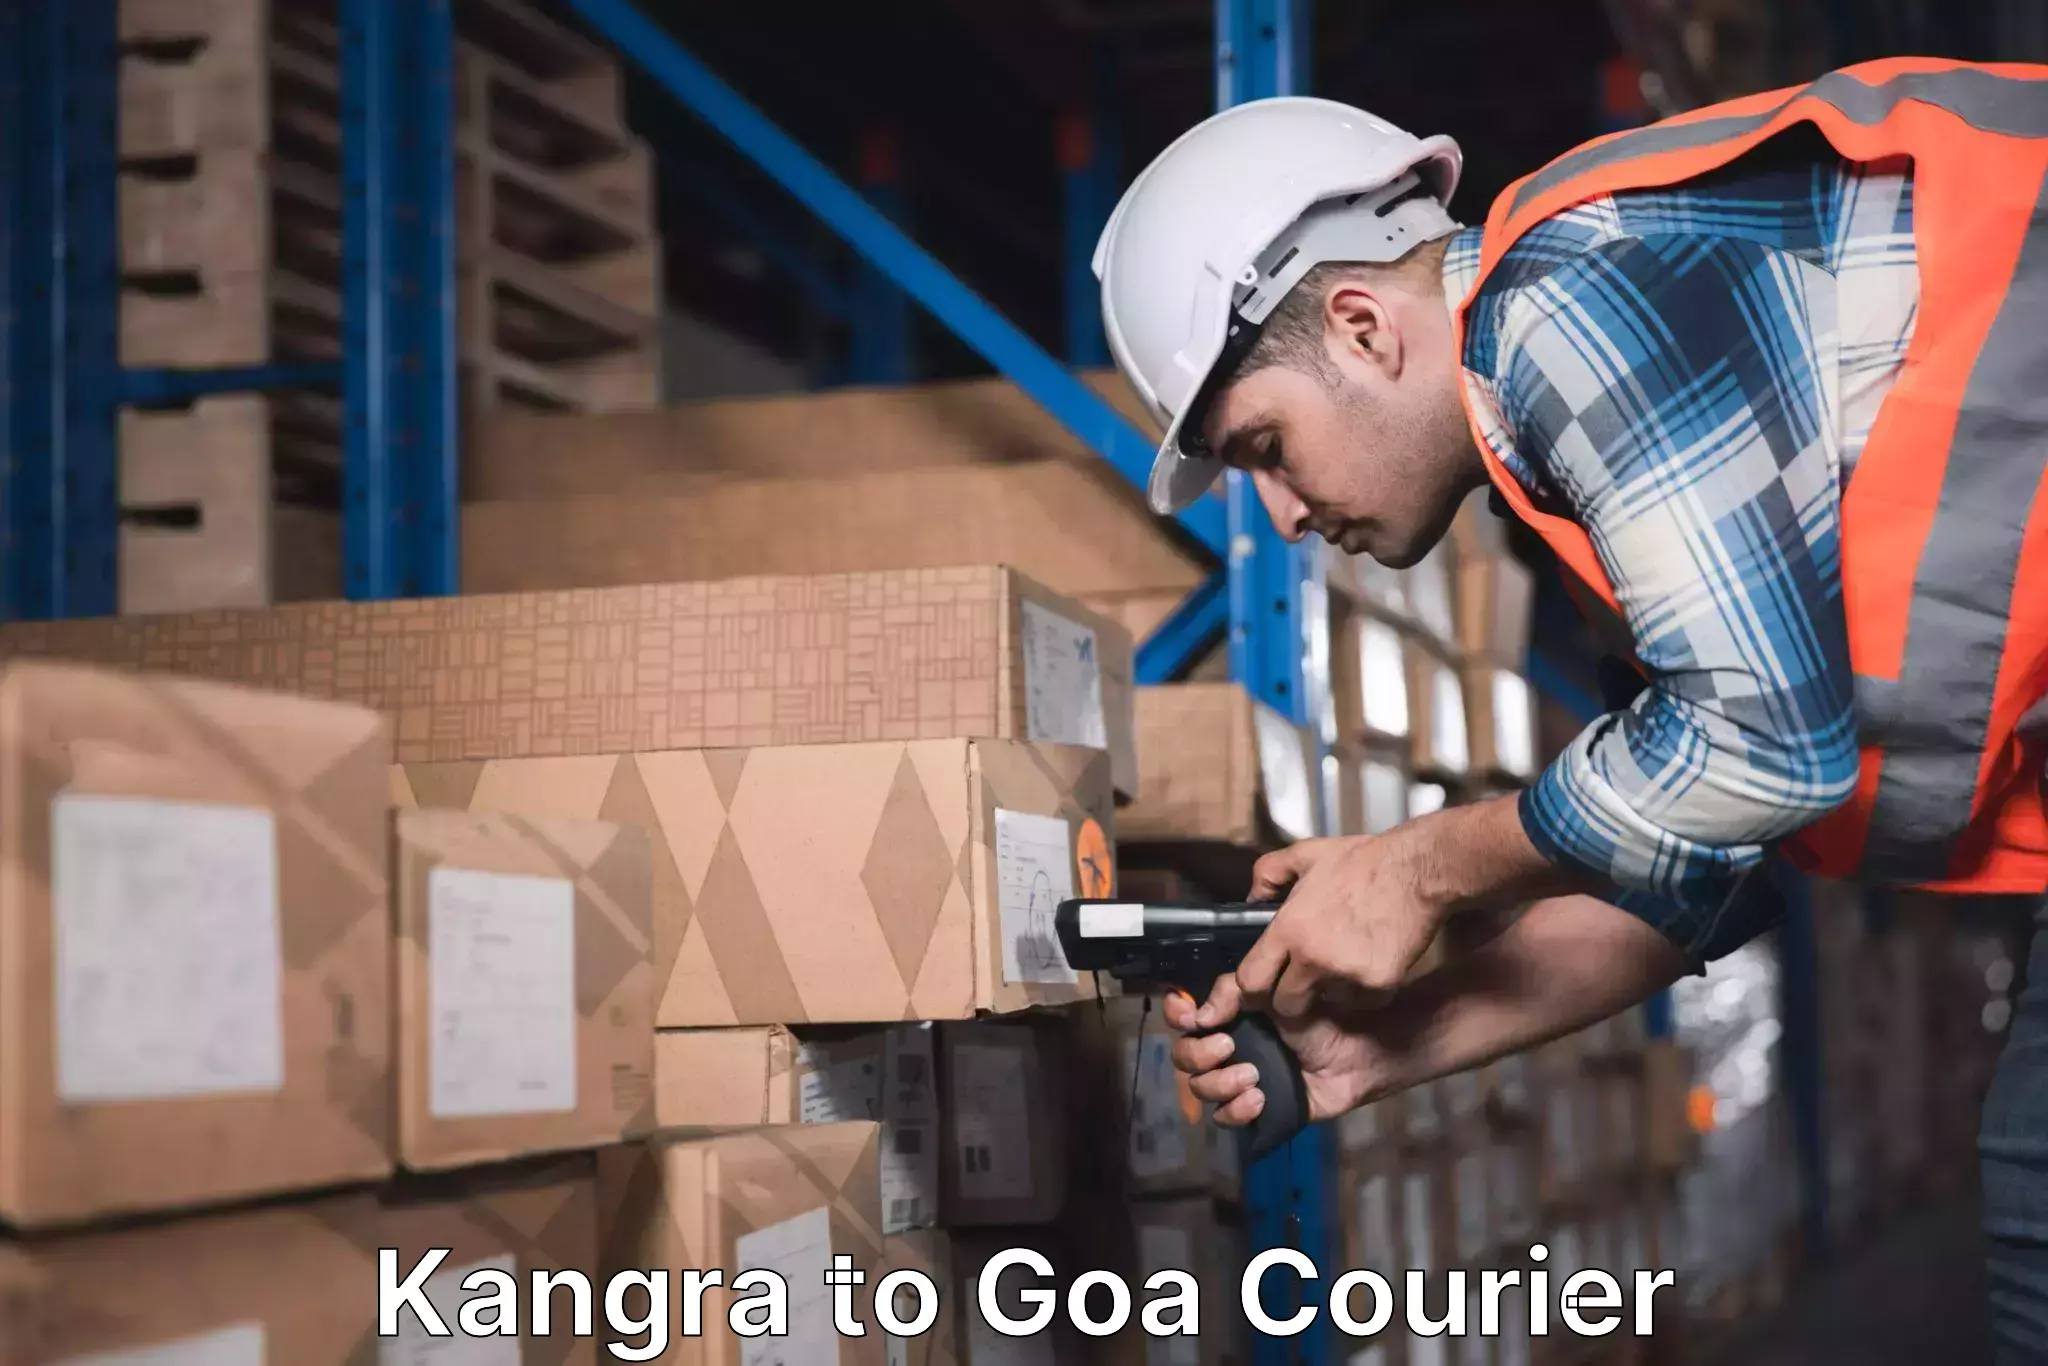 User-friendly courier app Kangra to Goa